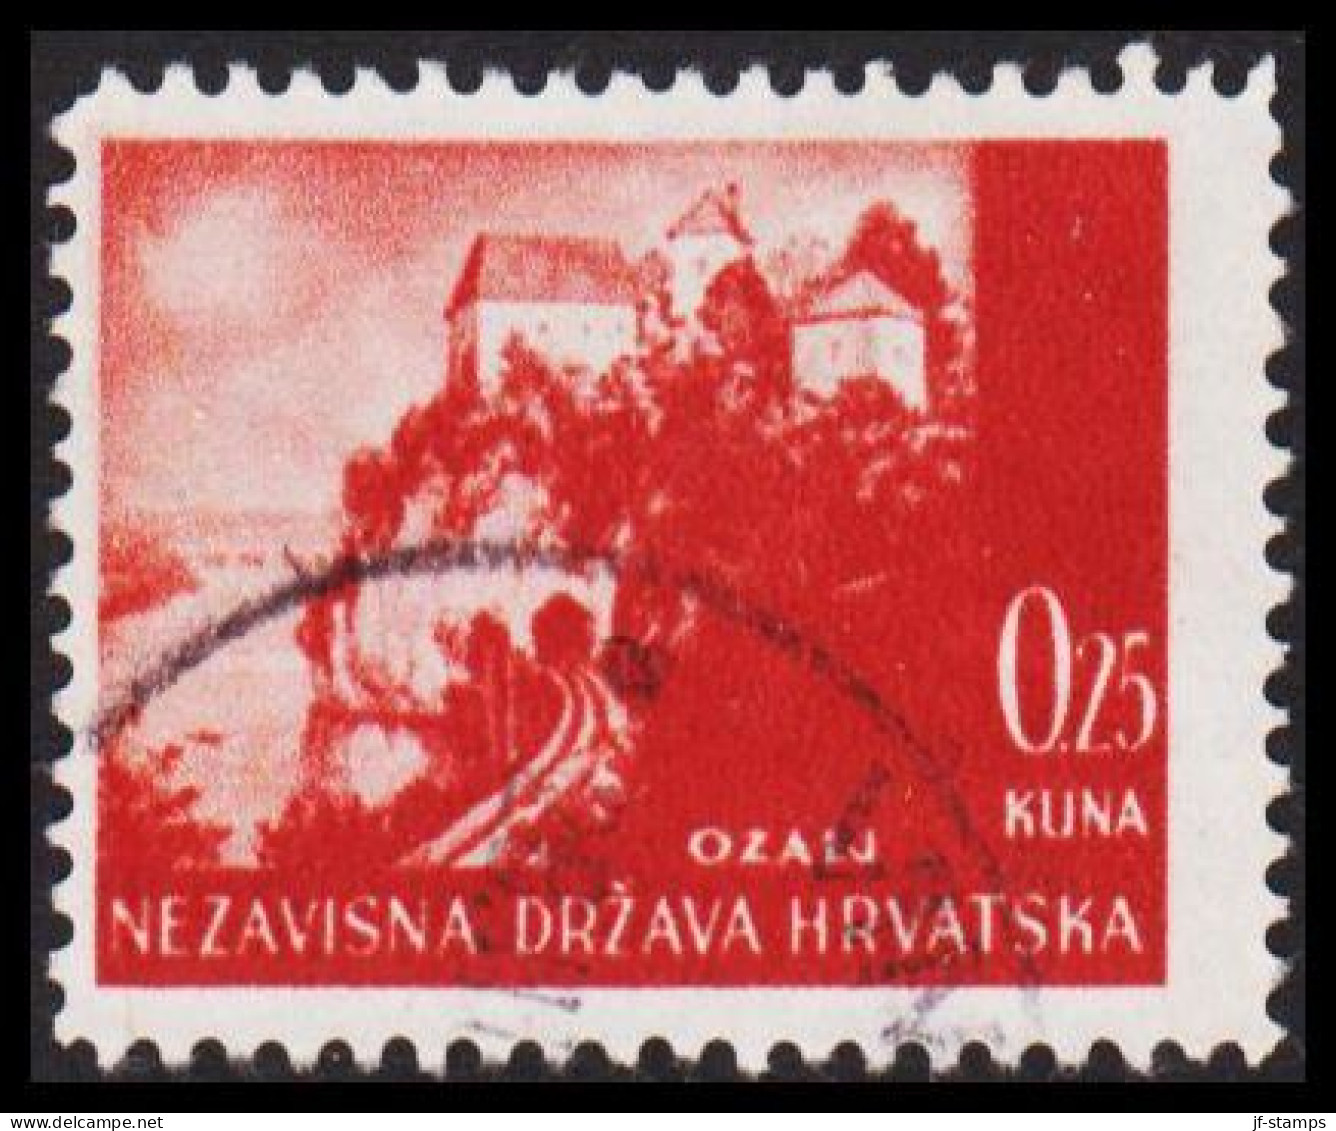 1941-1942. HRVATSKA Landscapes 0,25 KUNA.  (Michel 47) - JF546041 - Croatia